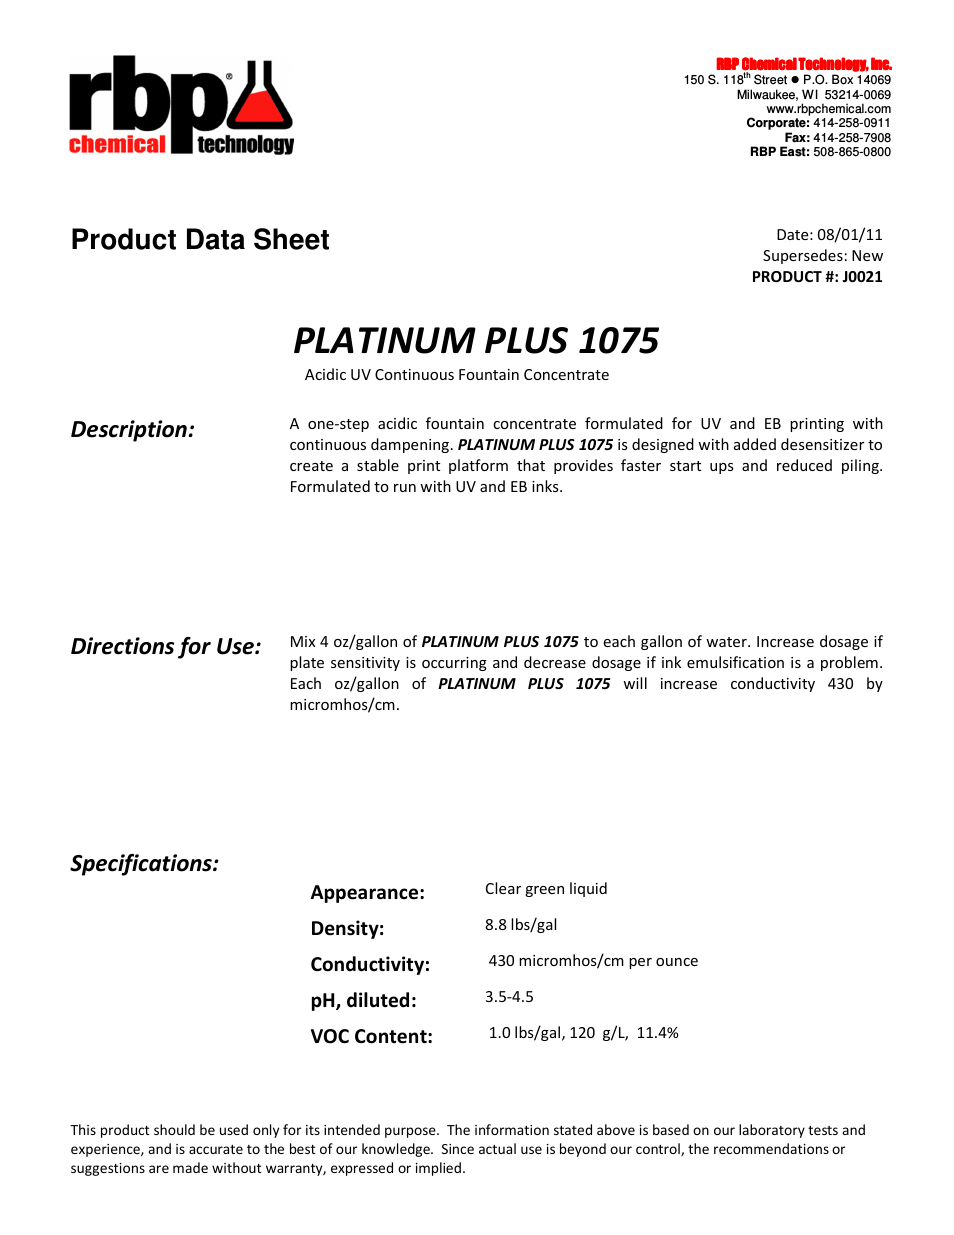 J0021 PLATINUM PLUS 1075